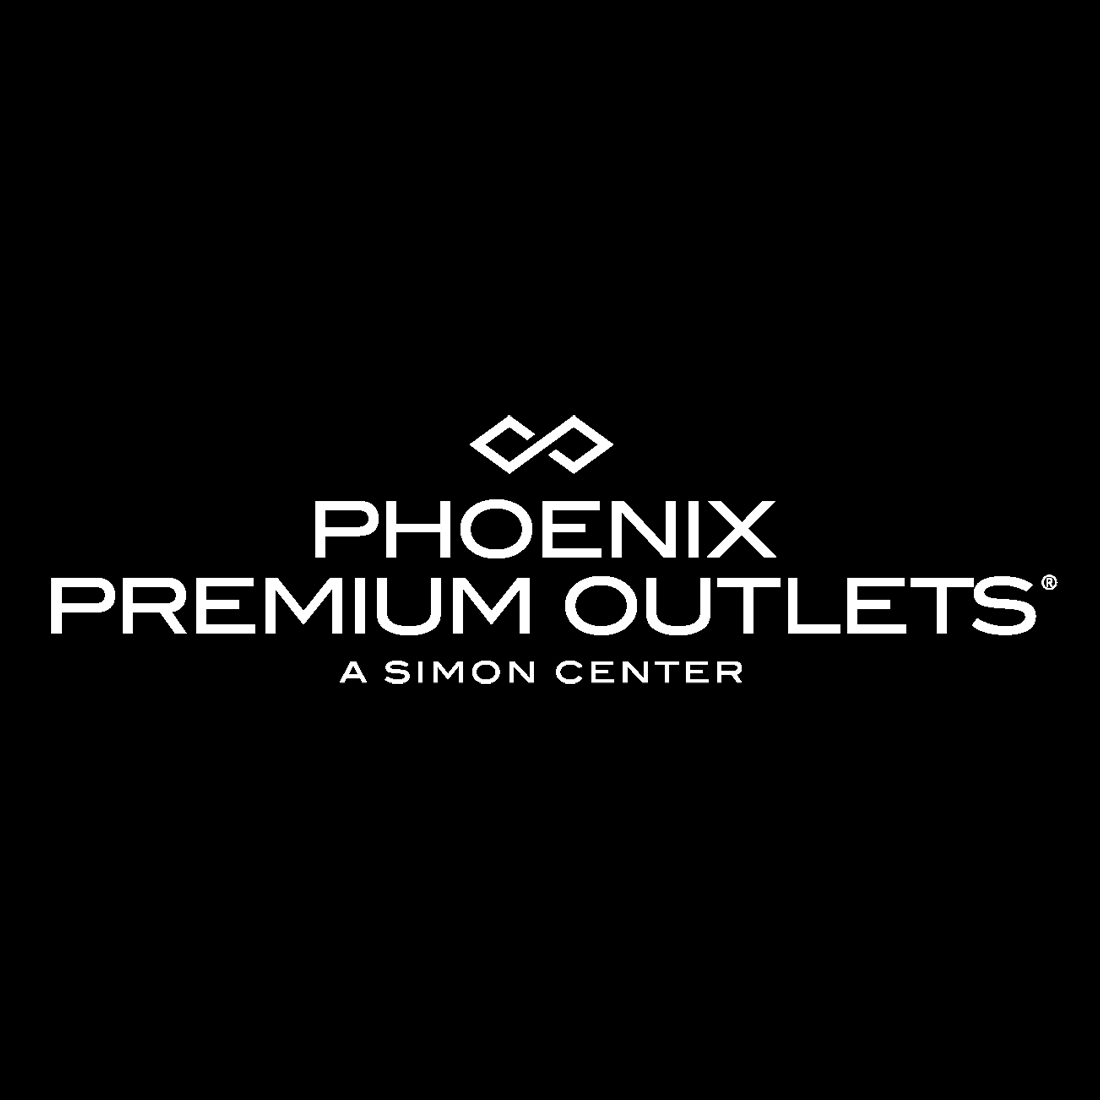 adidas phoenix premium outlets